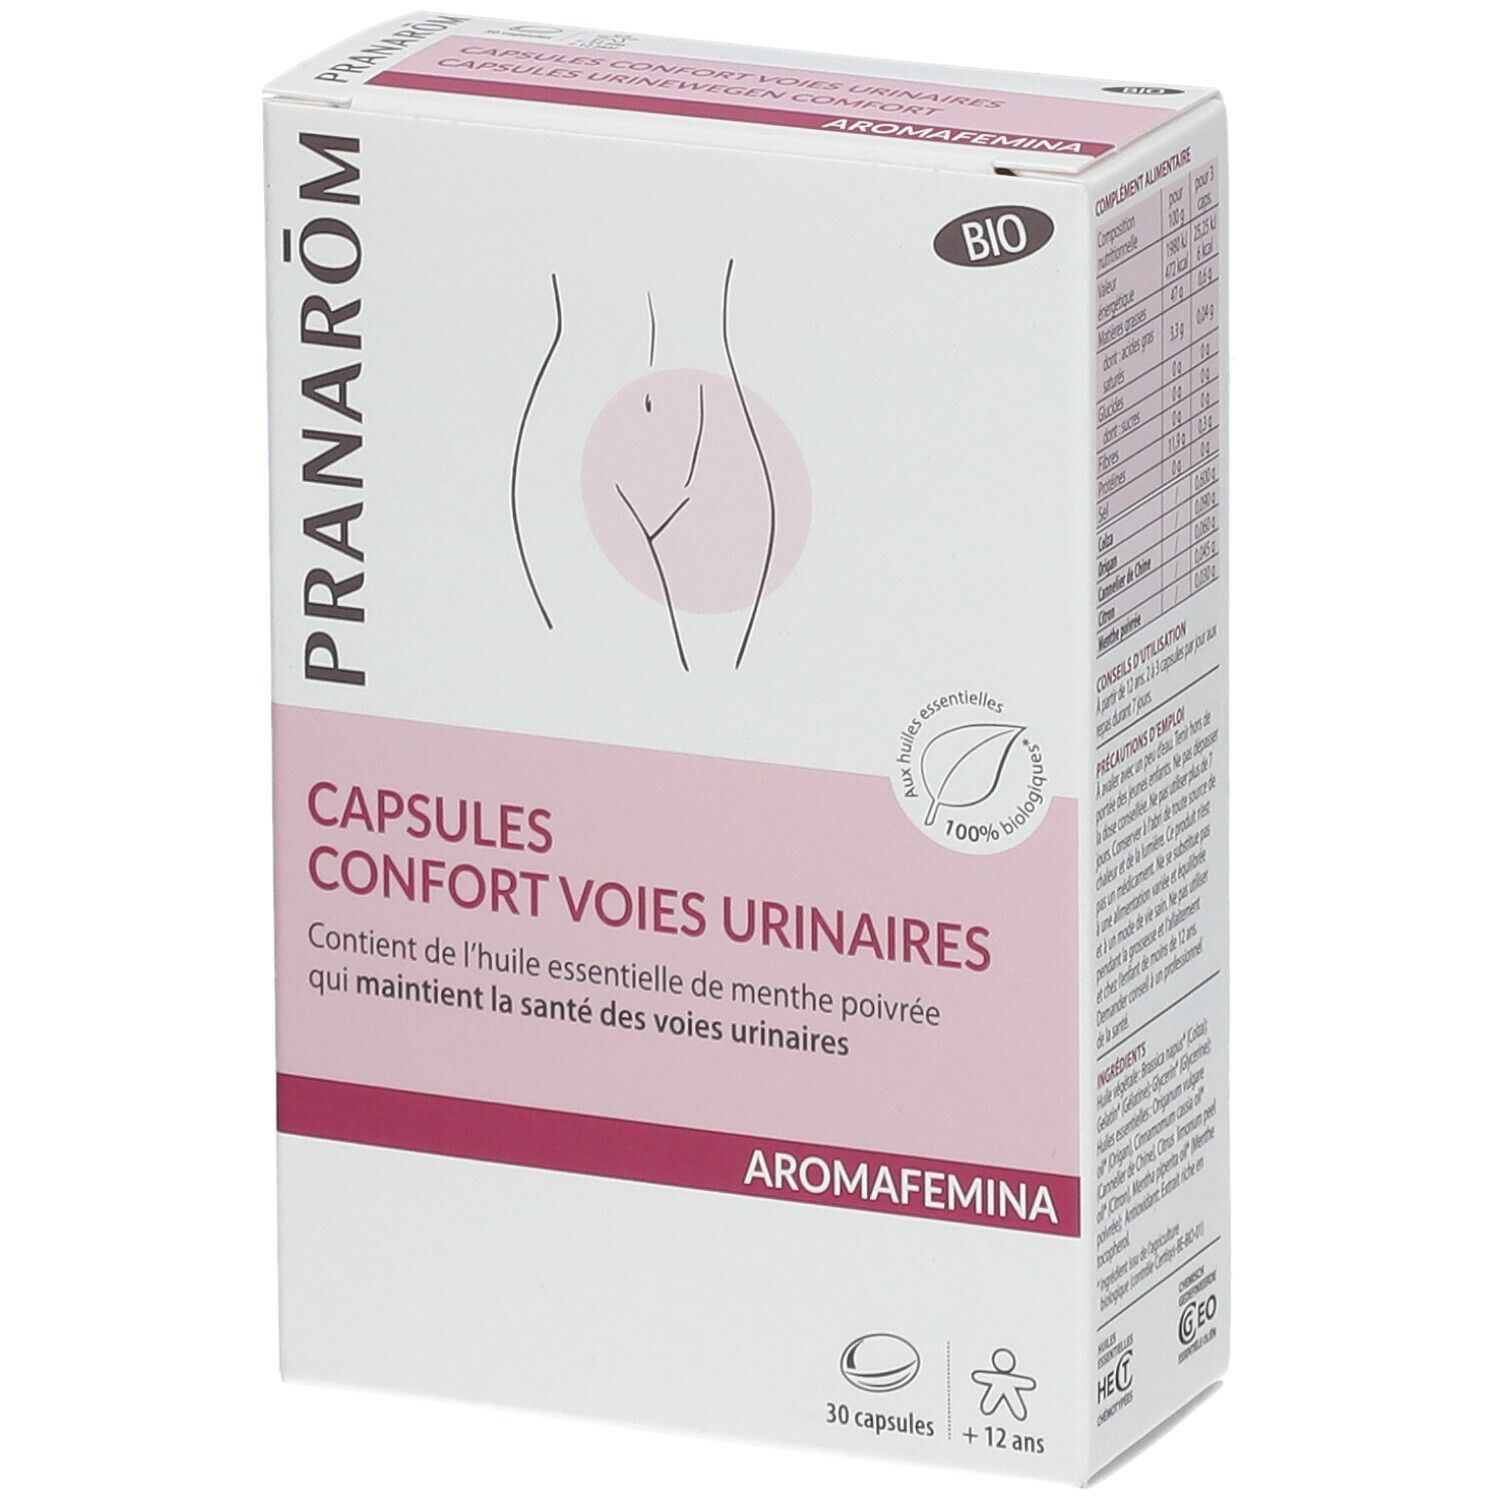 Pranarom Confort voies urinaires capsules bio